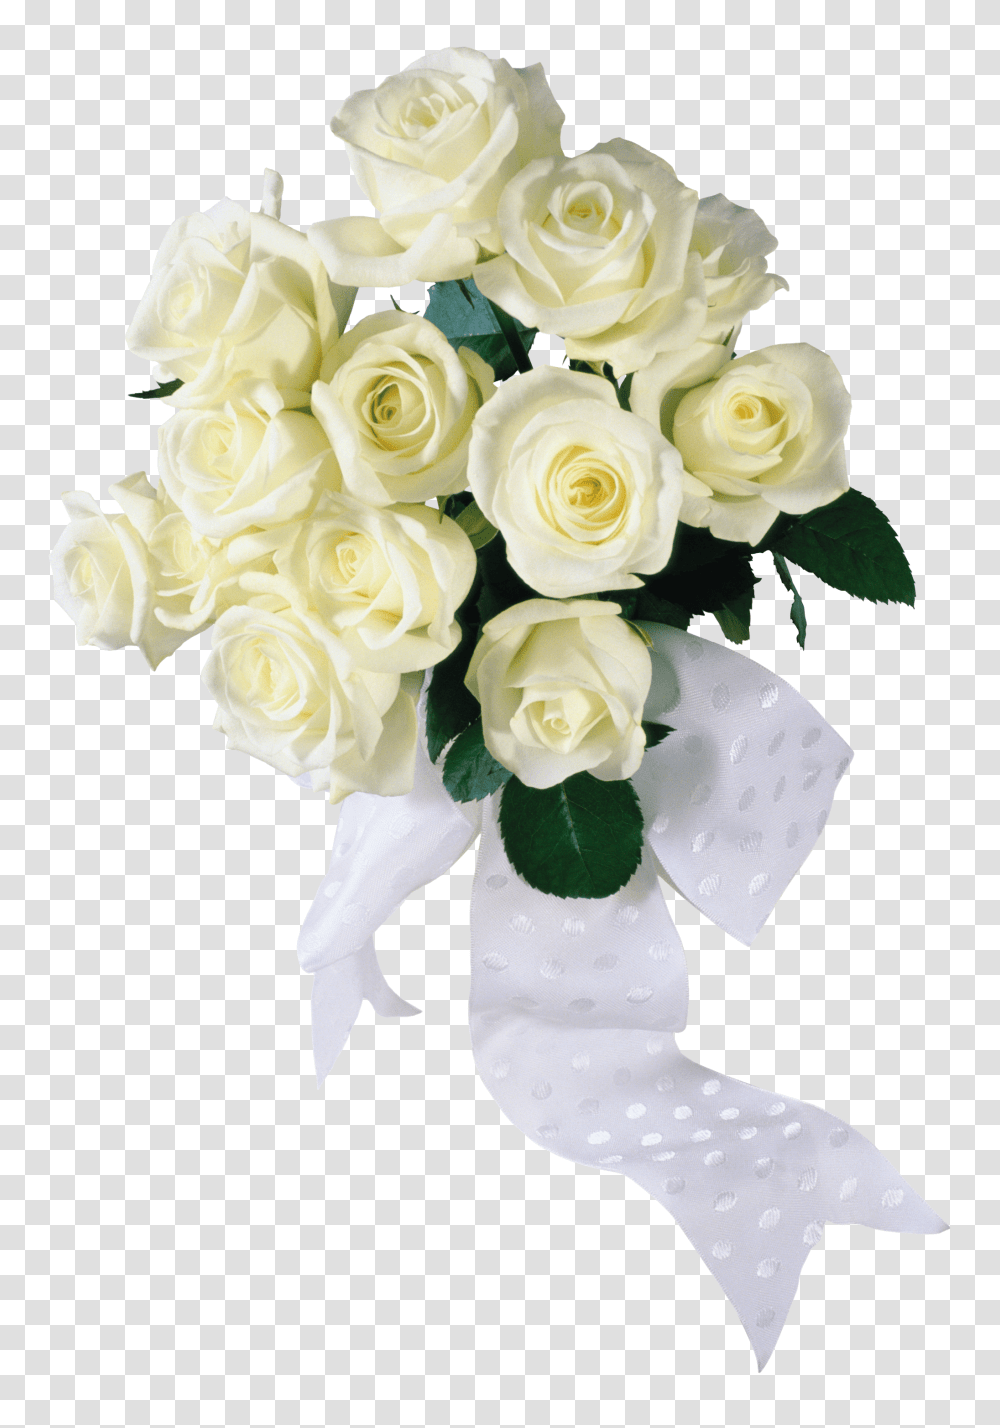 White Roses Image White Flowers Bouquet, Plant, Blossom, Flower Bouquet, Flower Arrangement Transparent Png